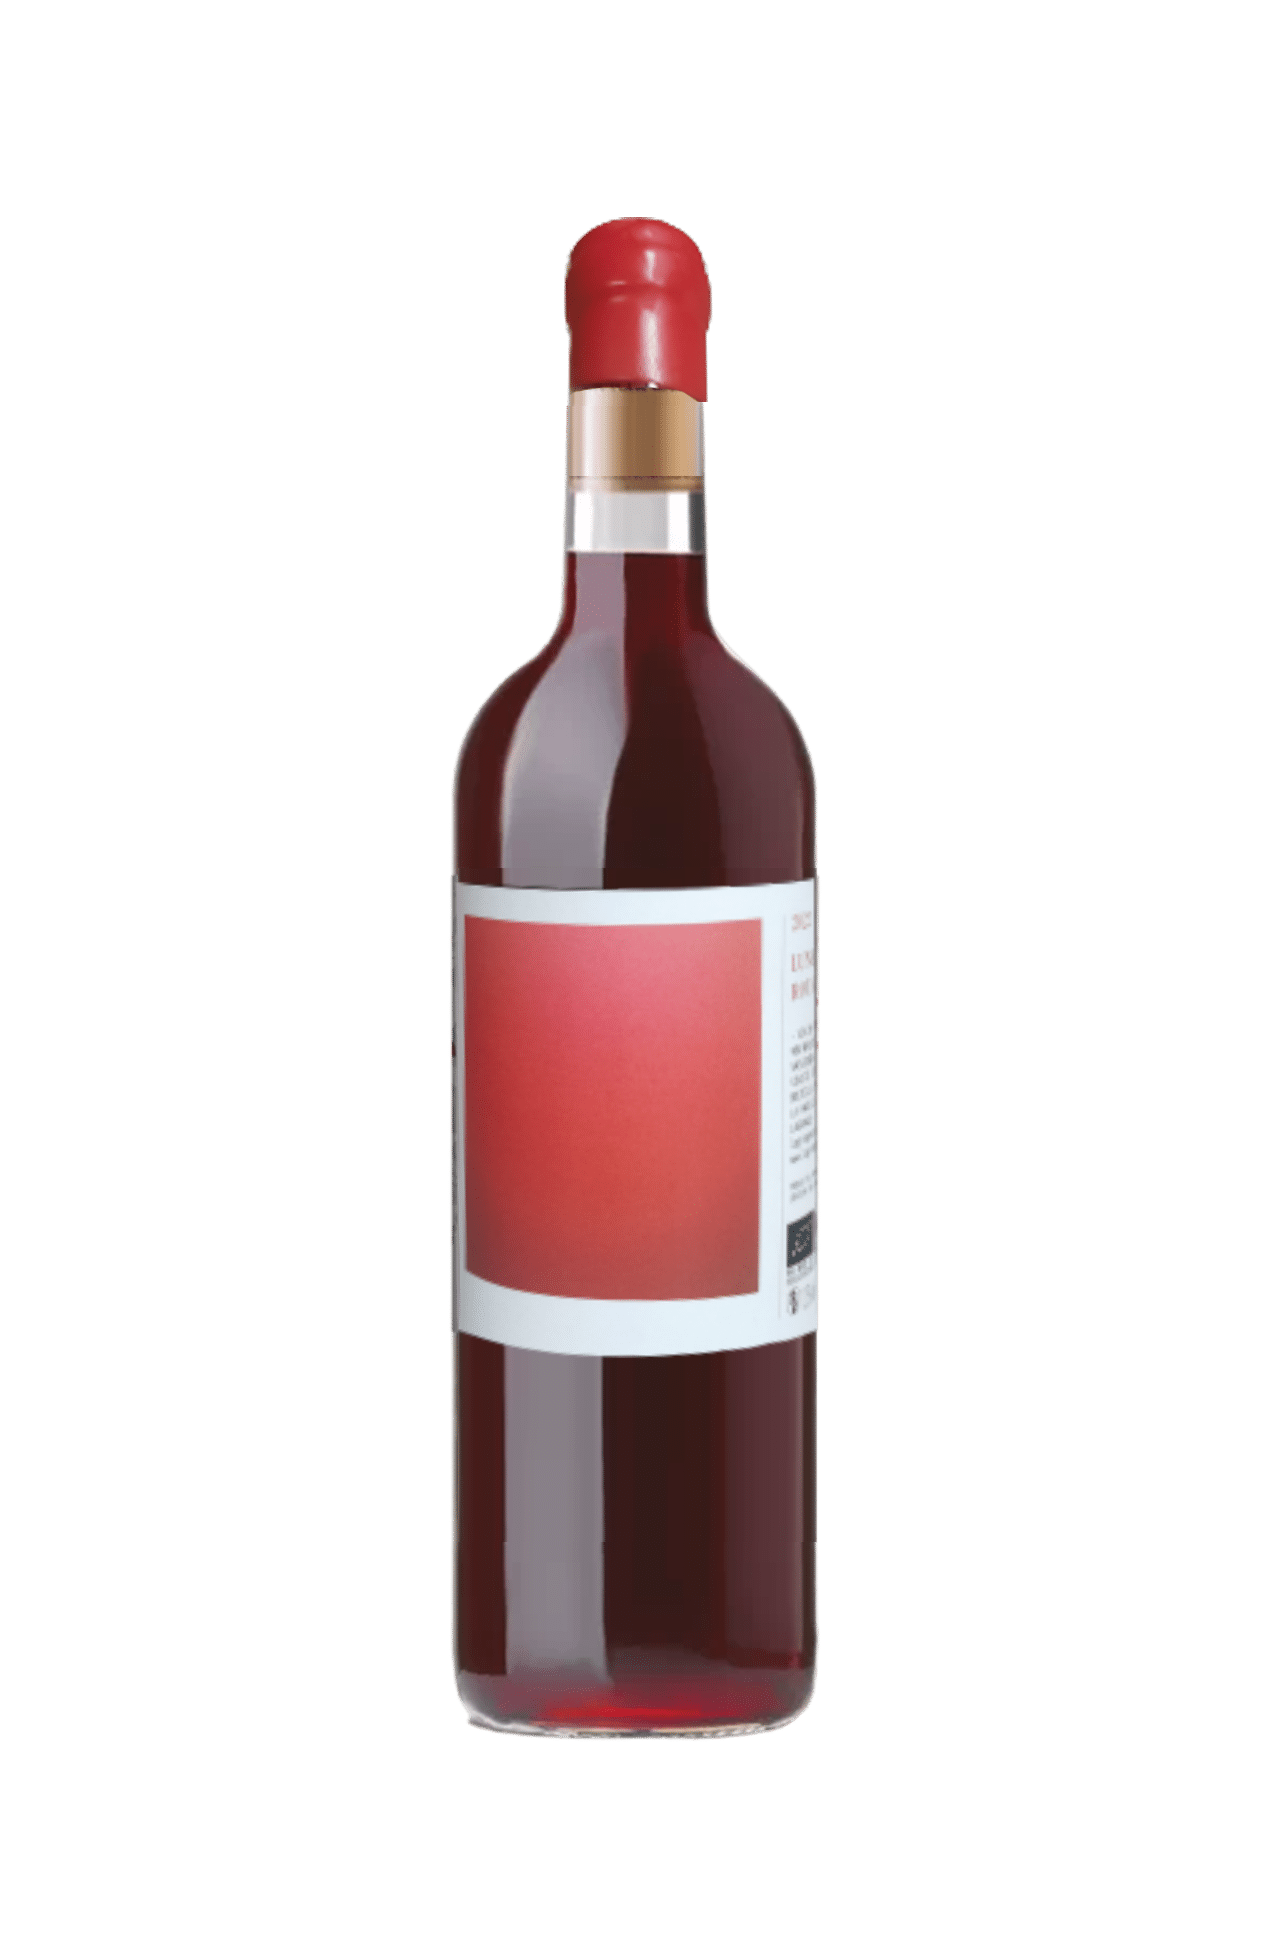 Vin rouge léger à boire frais - Lune rouge